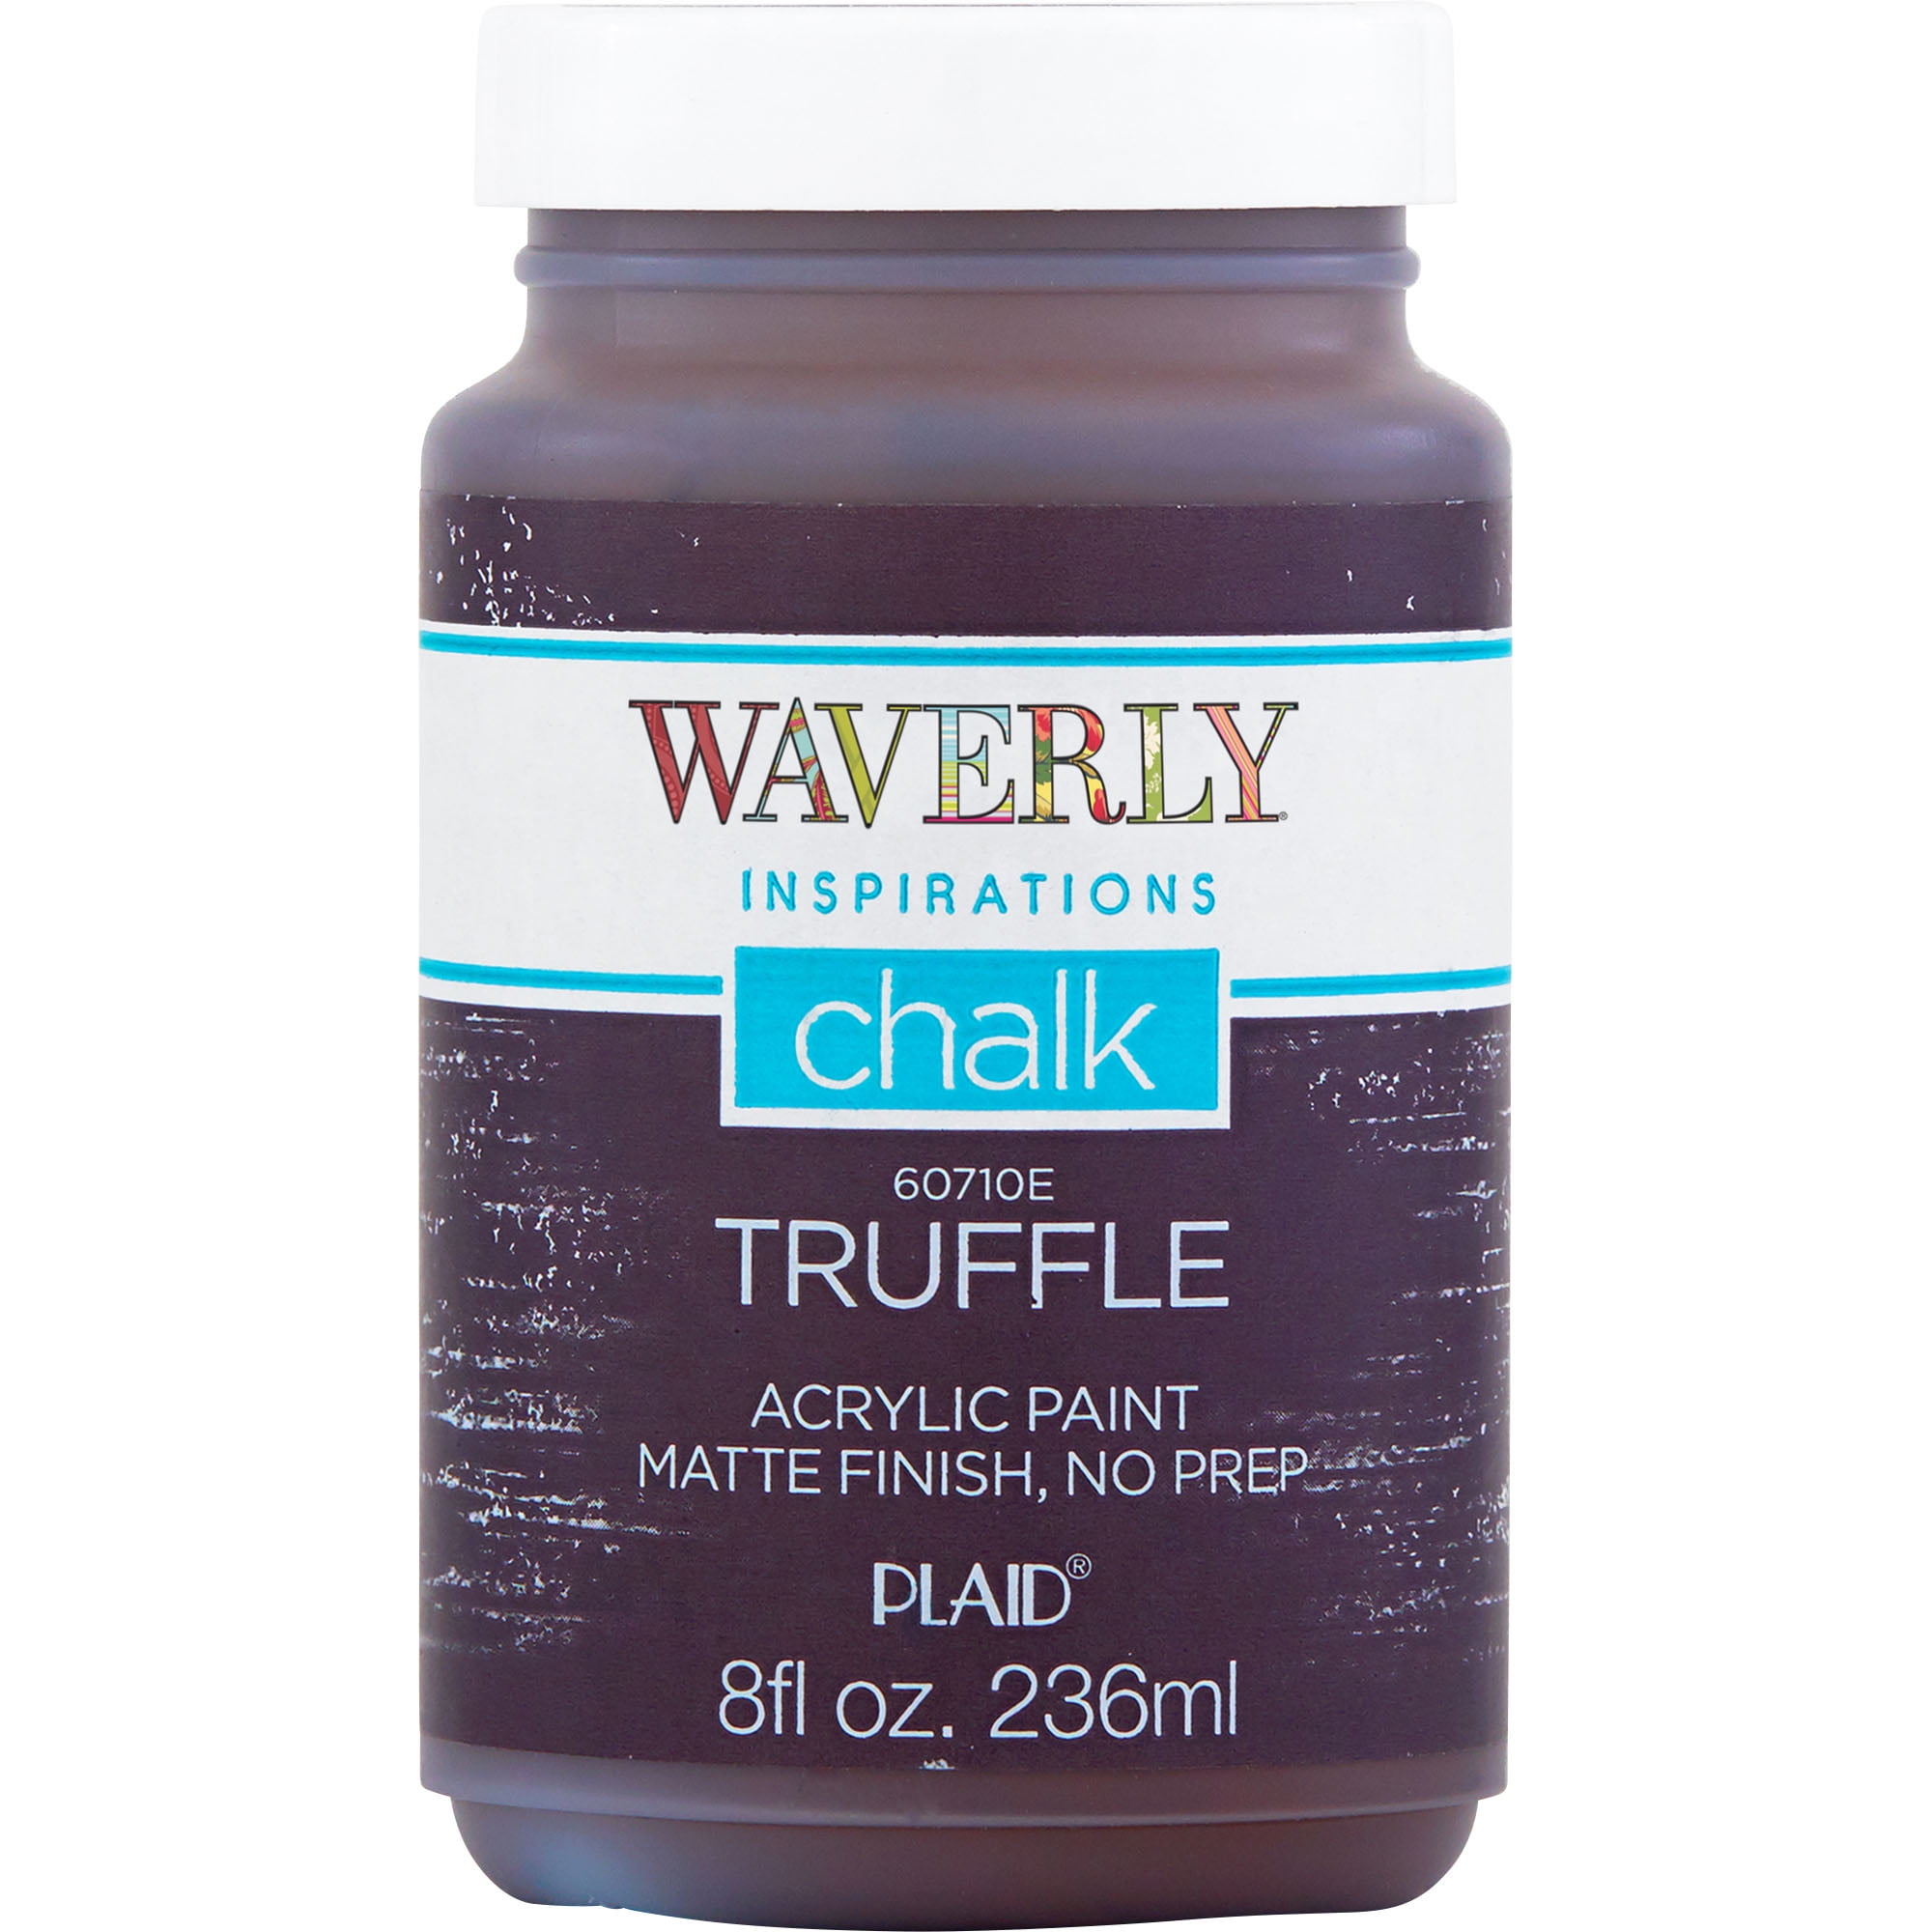 Waverly Inspirations Chalk Paint, Ultra Matte, Truffle, 8 fl oz